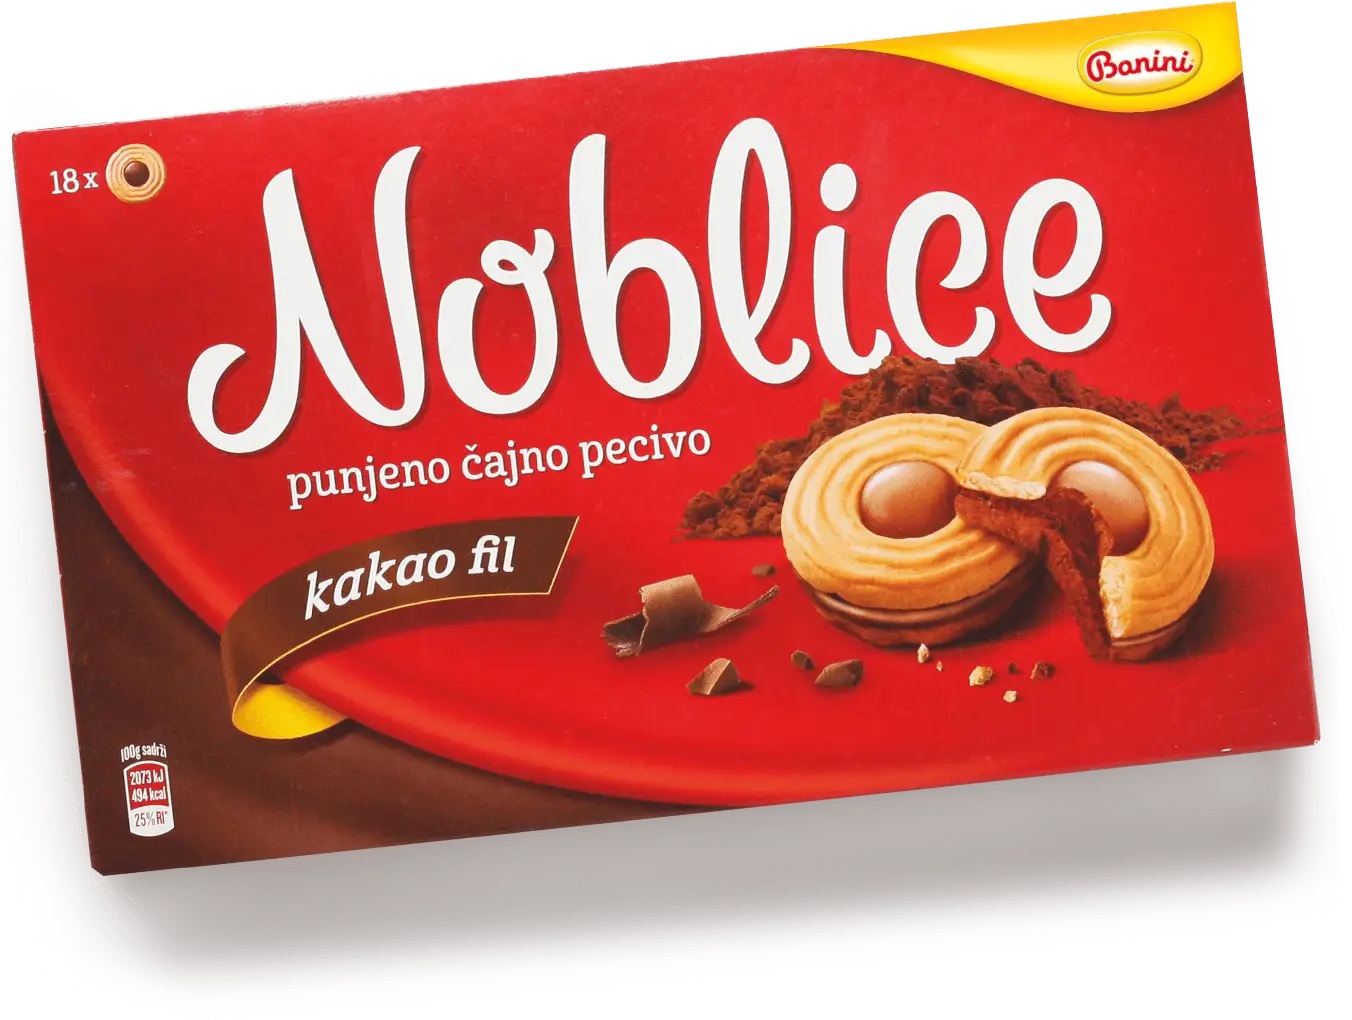 Печенье Banini Noblice single песочное, с начинкой из какао, 350 г